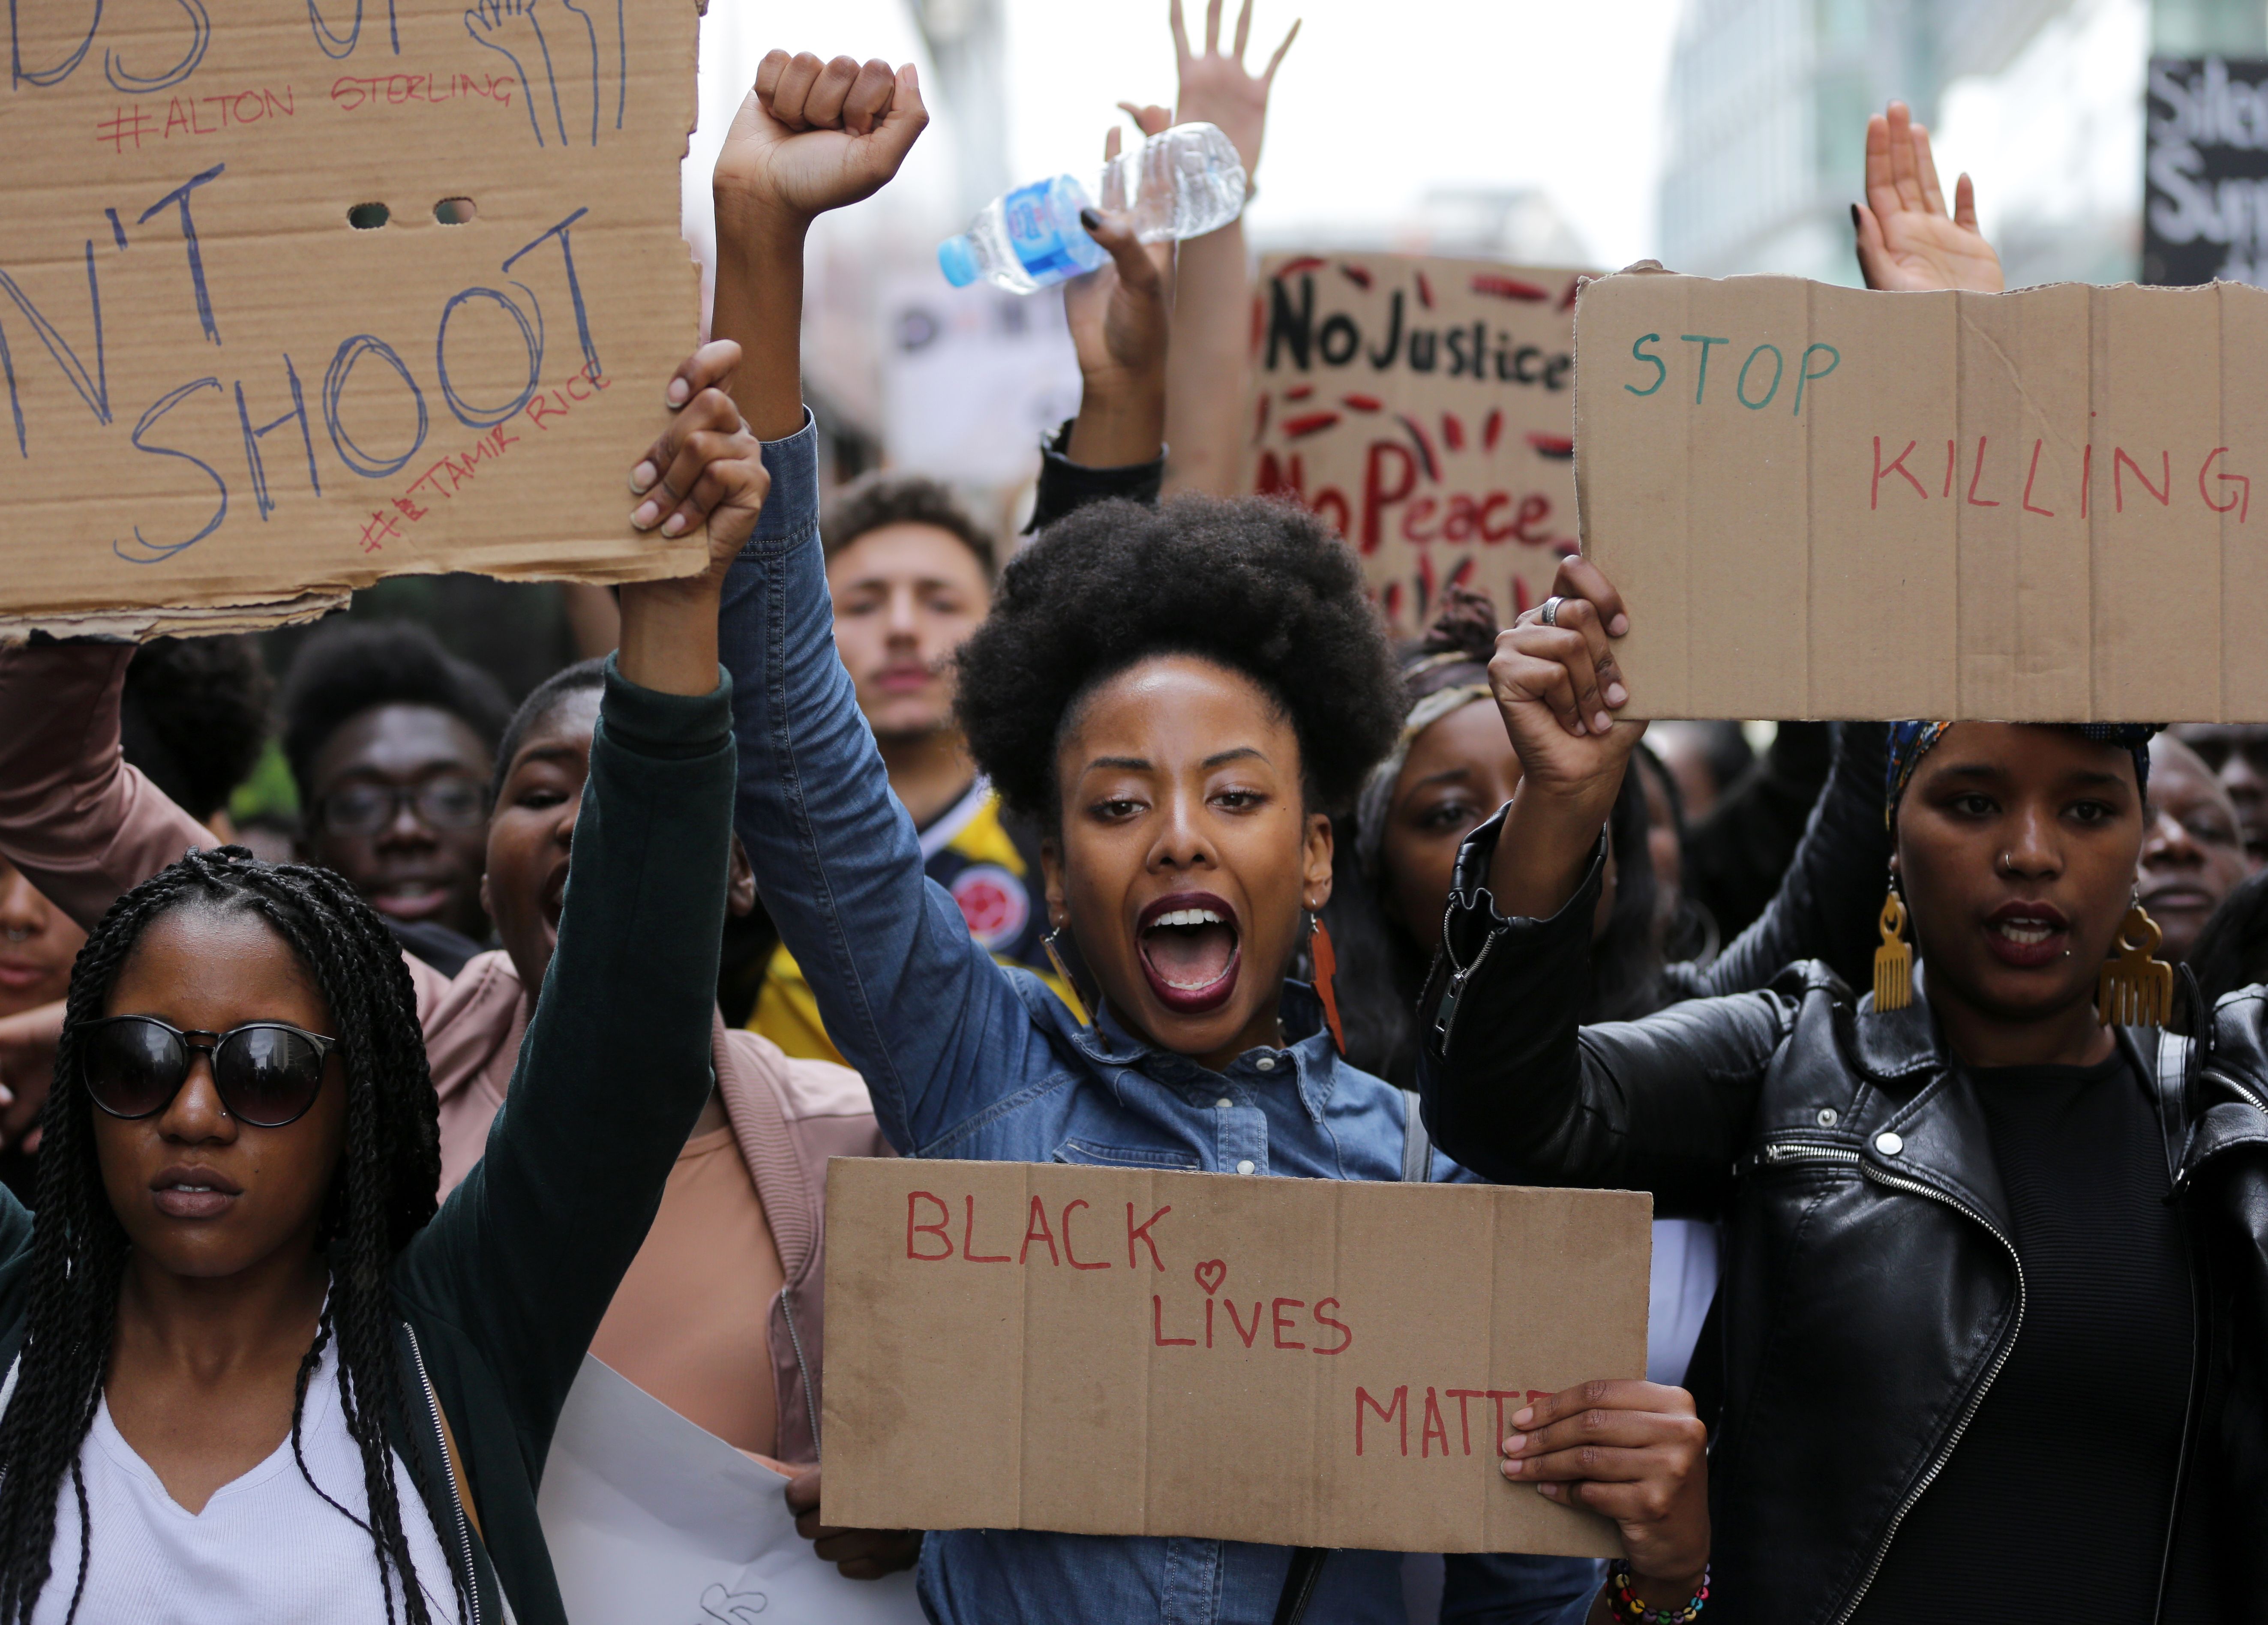 A Black Lives Matter protest.